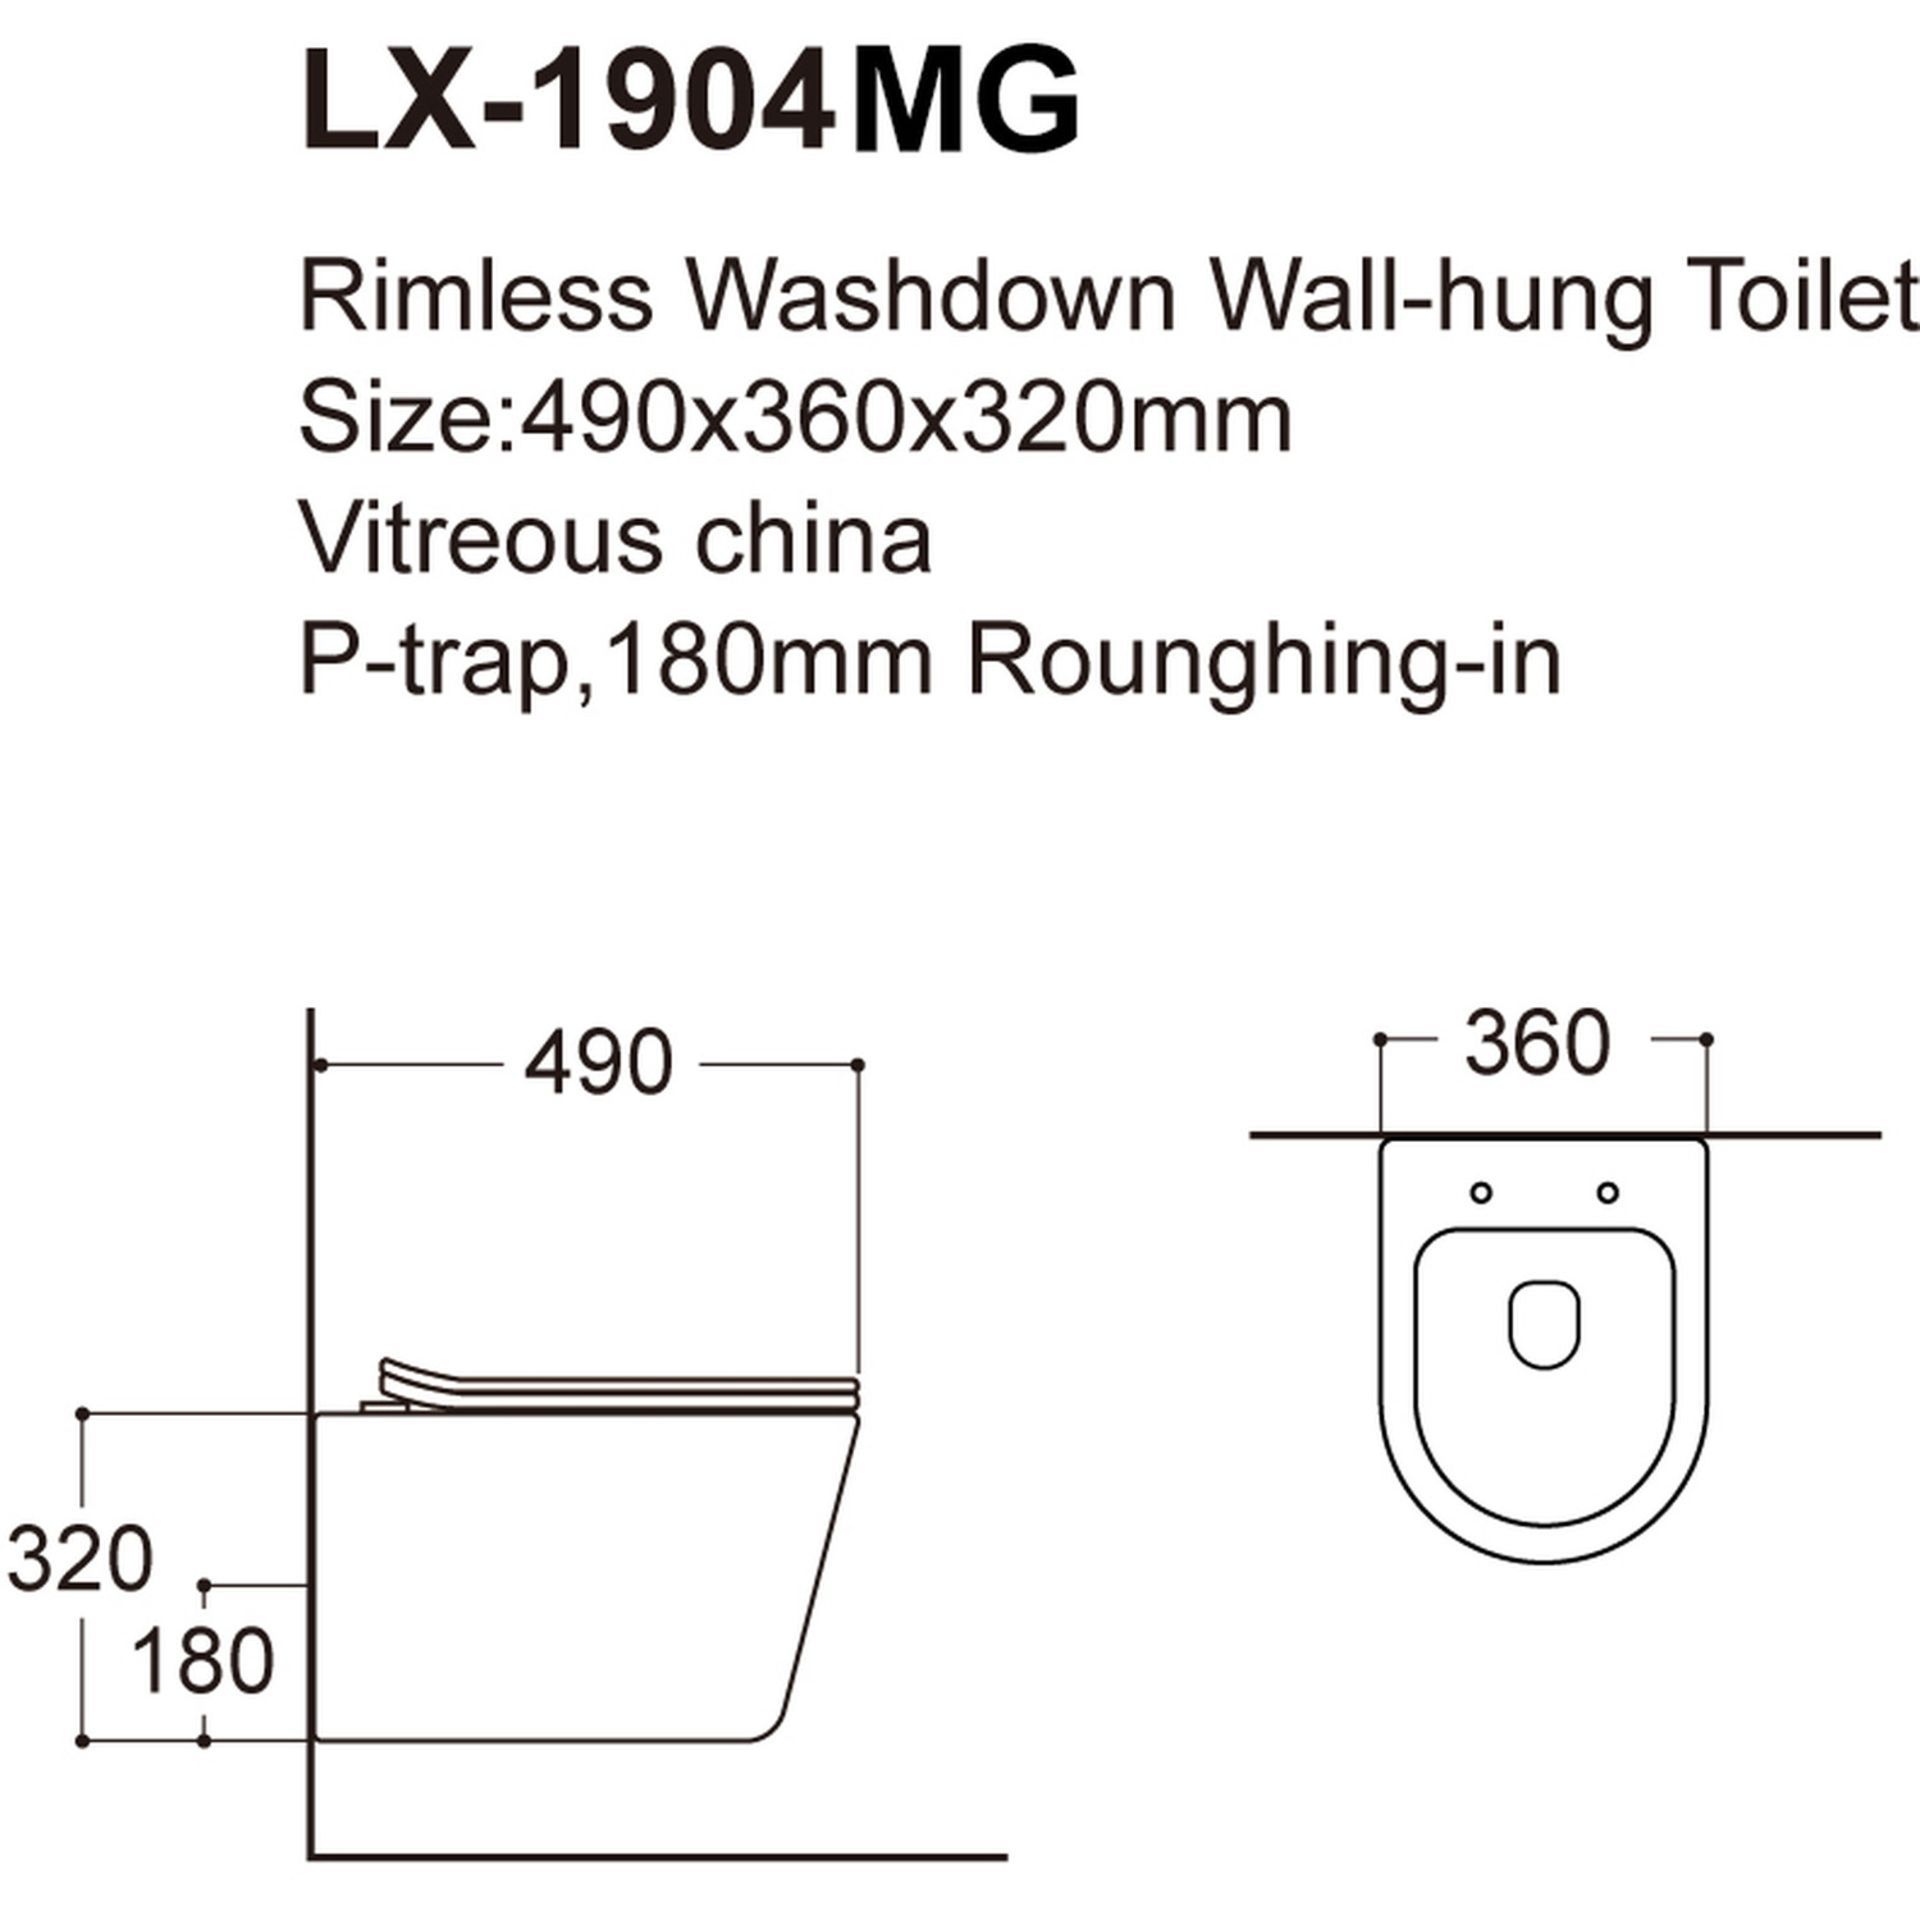 NEW & BOXED KARCENT Circular Rimless Wall Hung Toilet MATT BLACK. This Rimless wall-hung toilet - Image 2 of 2